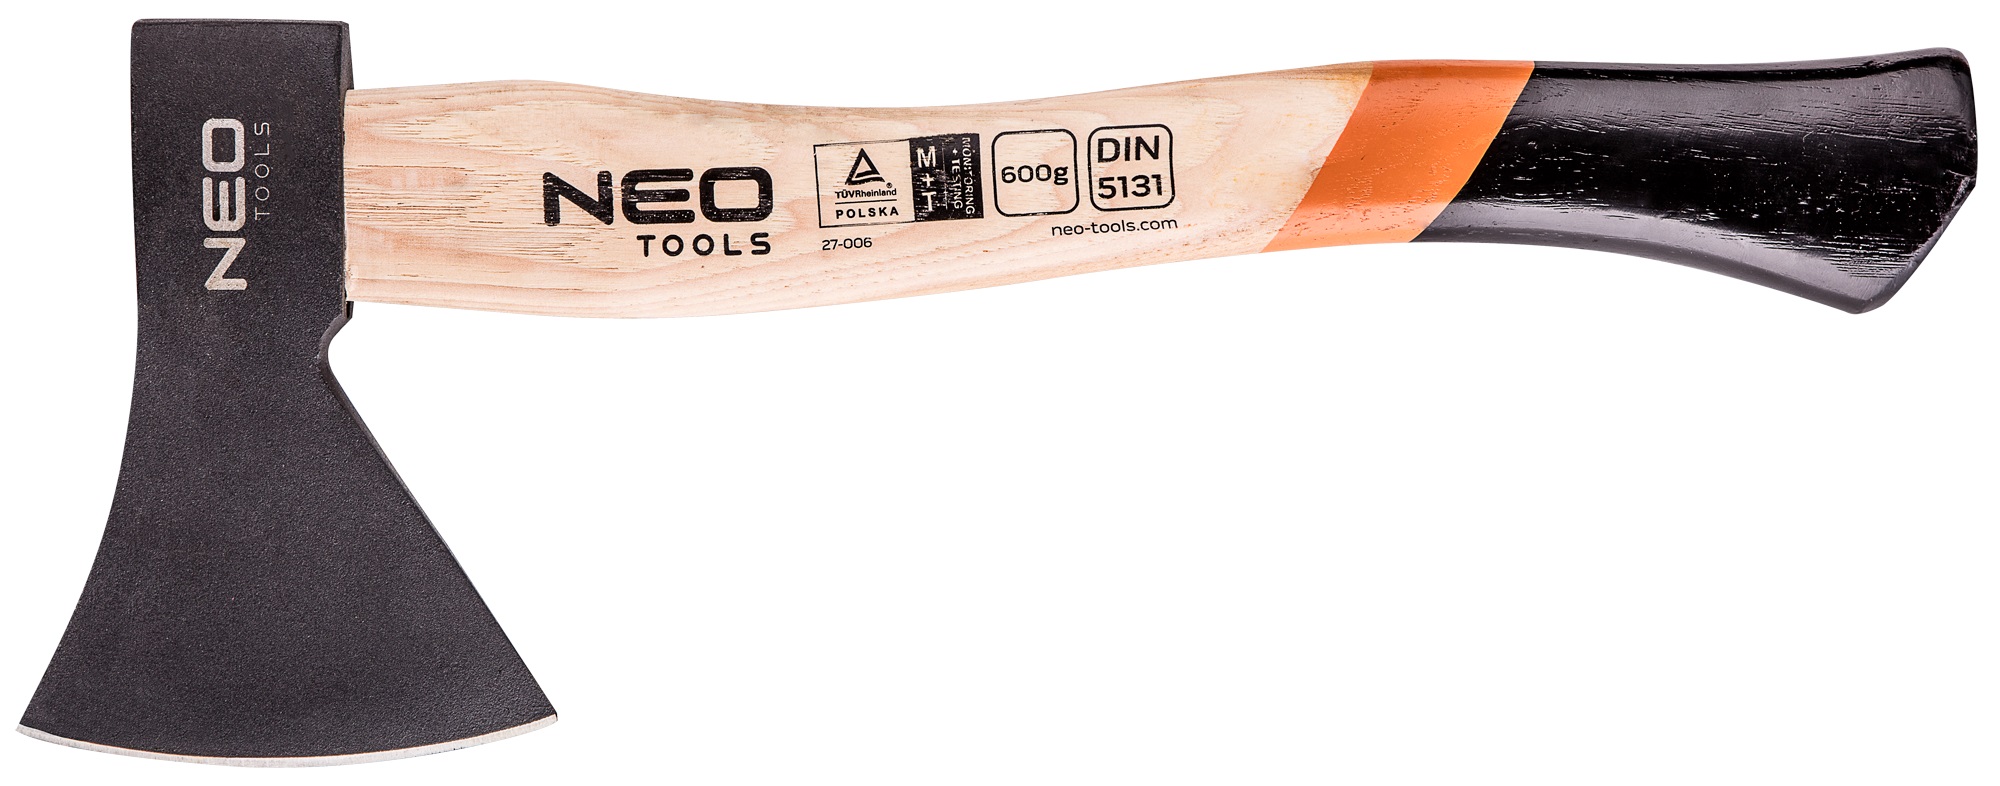 Neo Tools 27-006